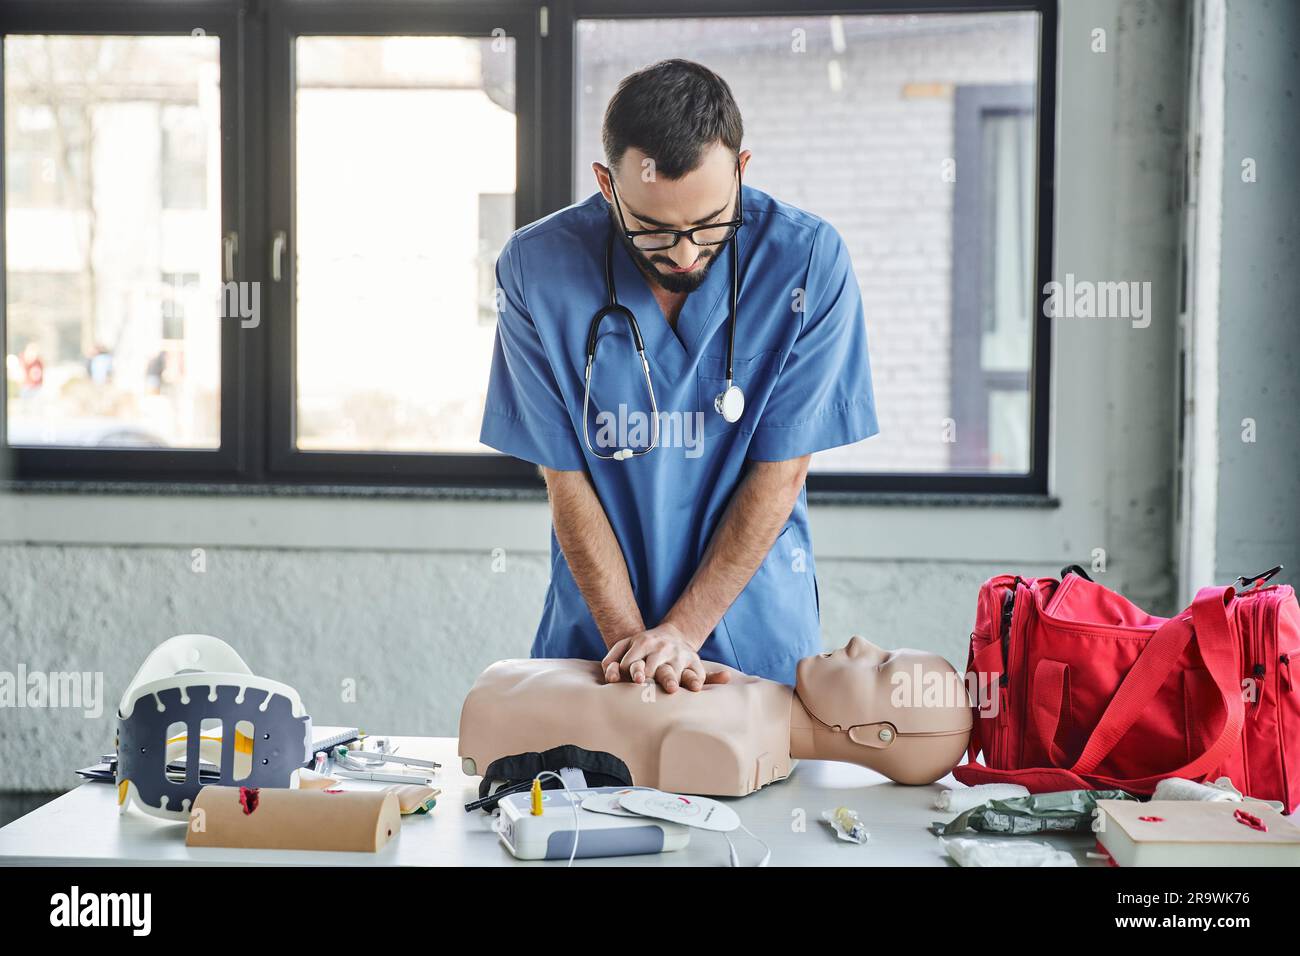 Jeune ambulancier en uniforme bleu et lunettes pratiquant des compressions thoraciques sur un mannequin de RCP près d'un défibrillateur et d'une trousse de premiers soins pendant la semina médicale Banque D'Images